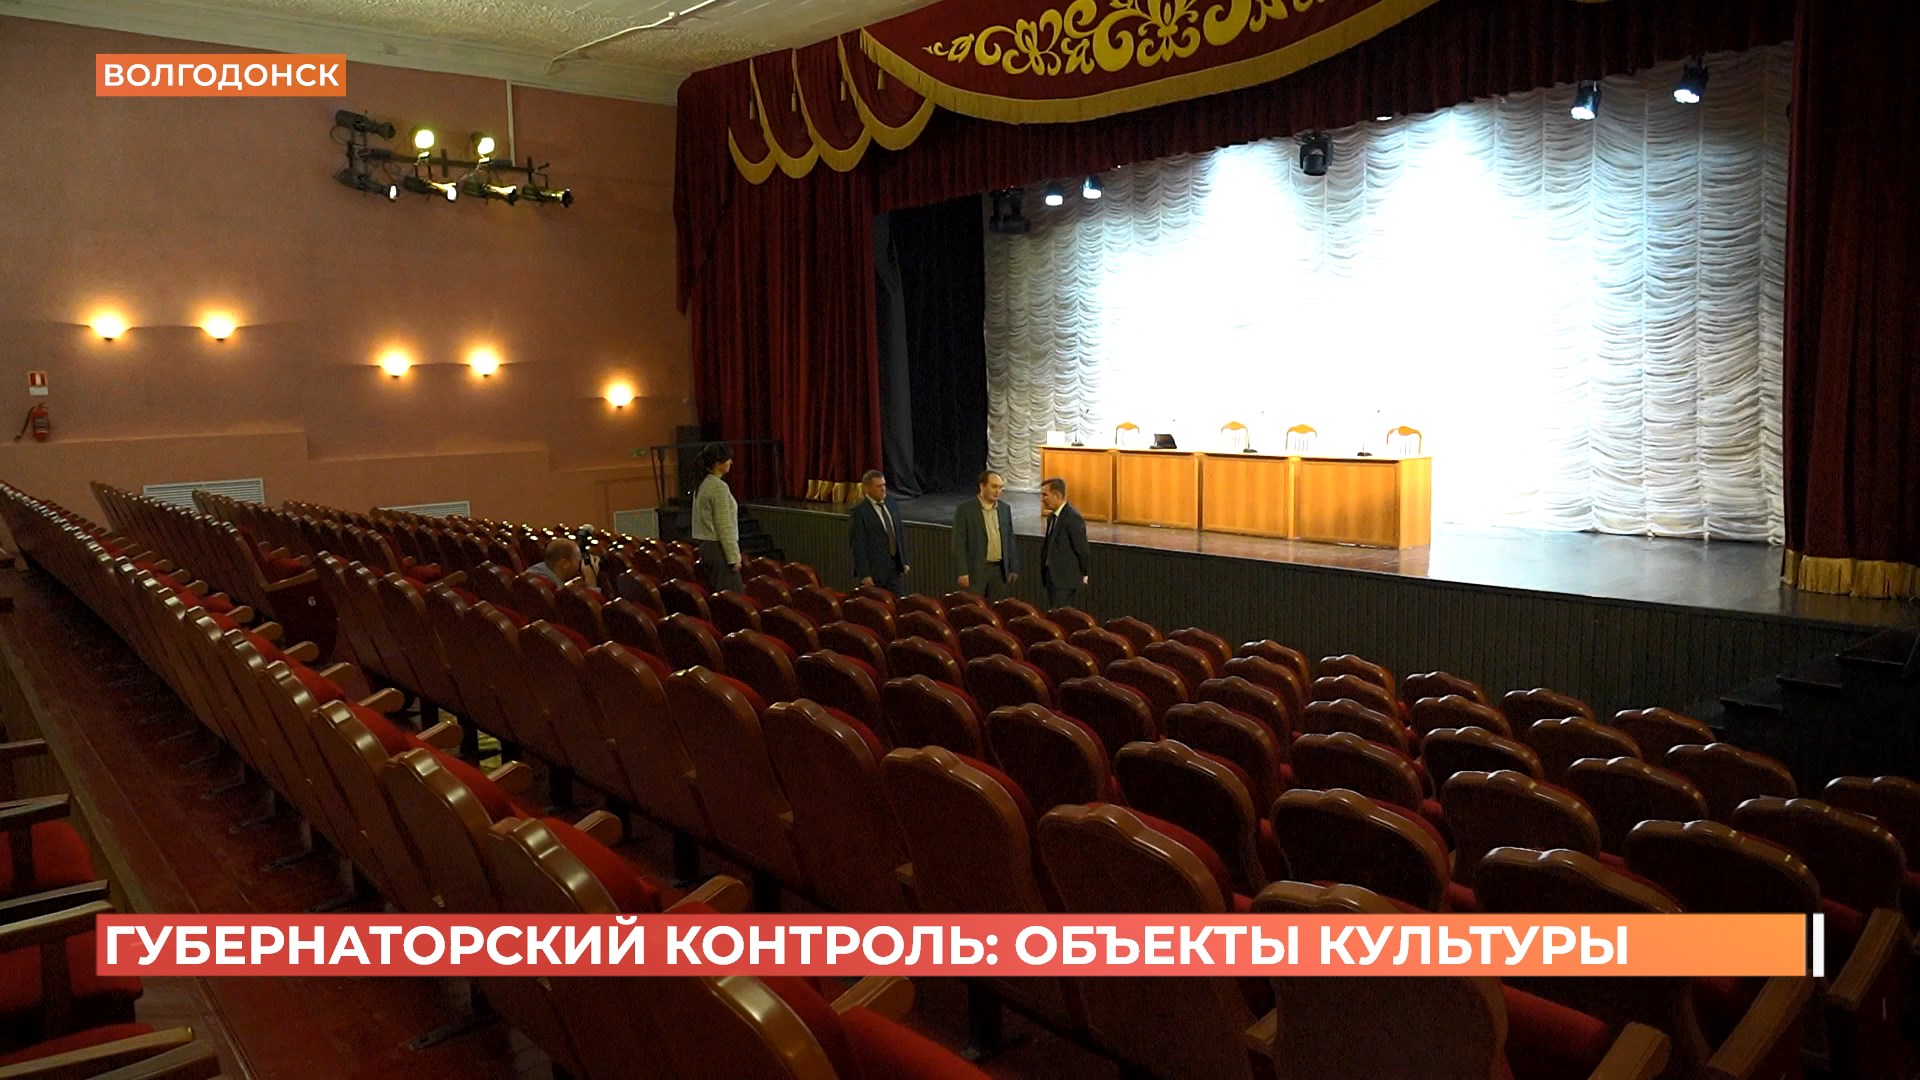 Группа губернаторского контроля  посетила  учреждения  культуры Волгодонского района